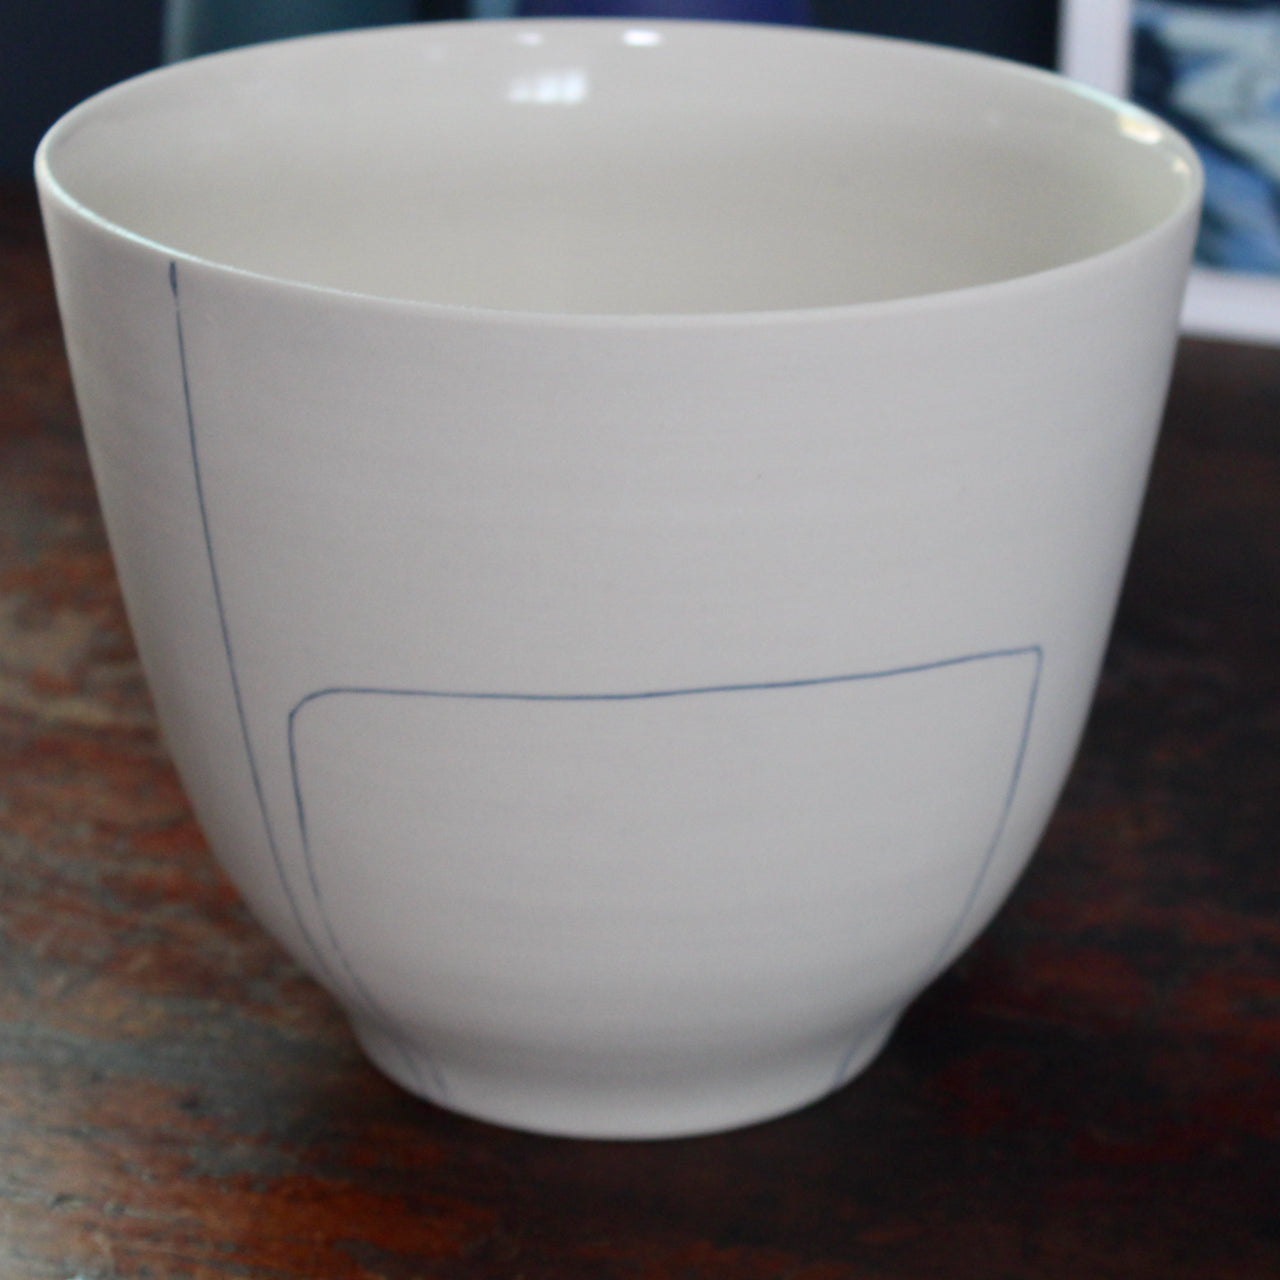 liz o'dwyer porcelain bowl with blue line details 